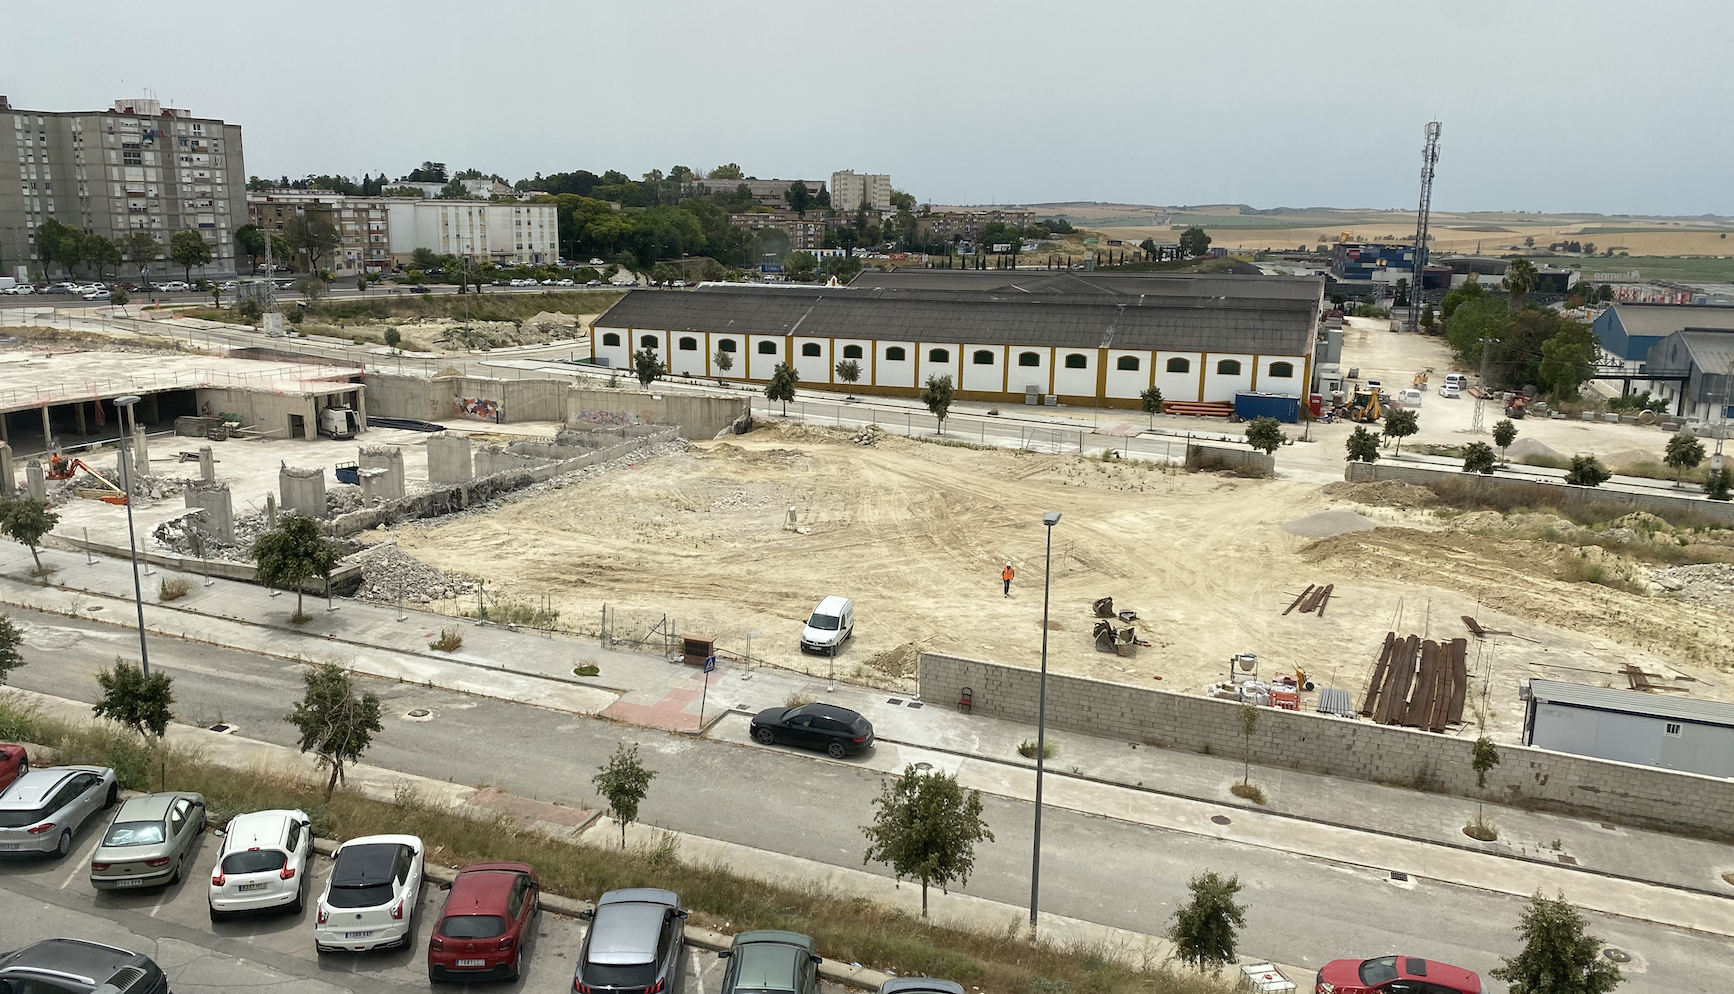 Vista del enorme terreno comercial junto al Hospital de Jerez y al denominado sector Cooperativa, en una imagen reciente.